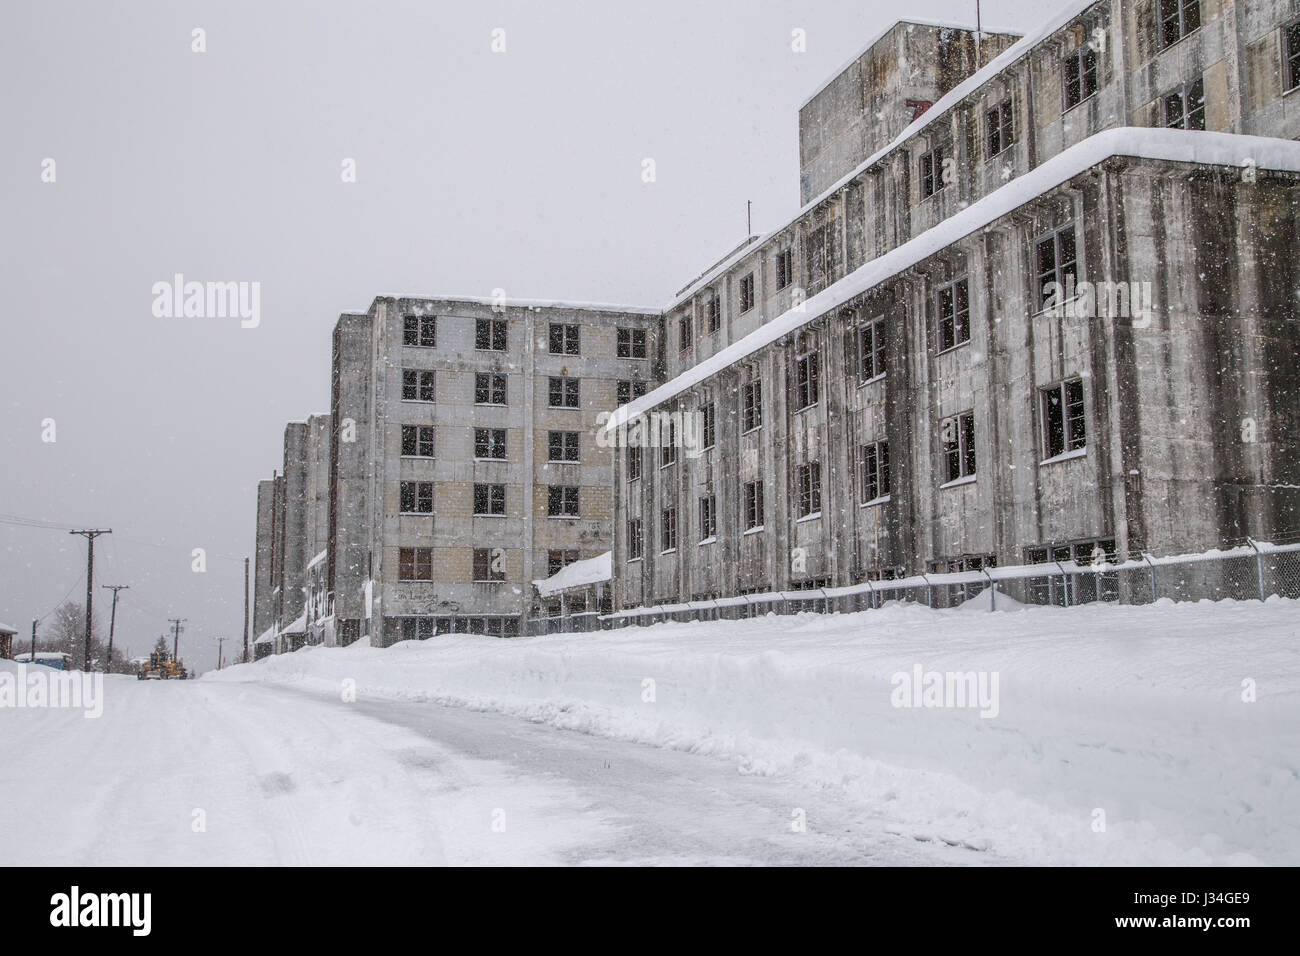 El edificio Buckner en la nieve, un edificio abandonado ex militares estadounidenses en Whittier, Alaska, EE.UU. Foto de stock